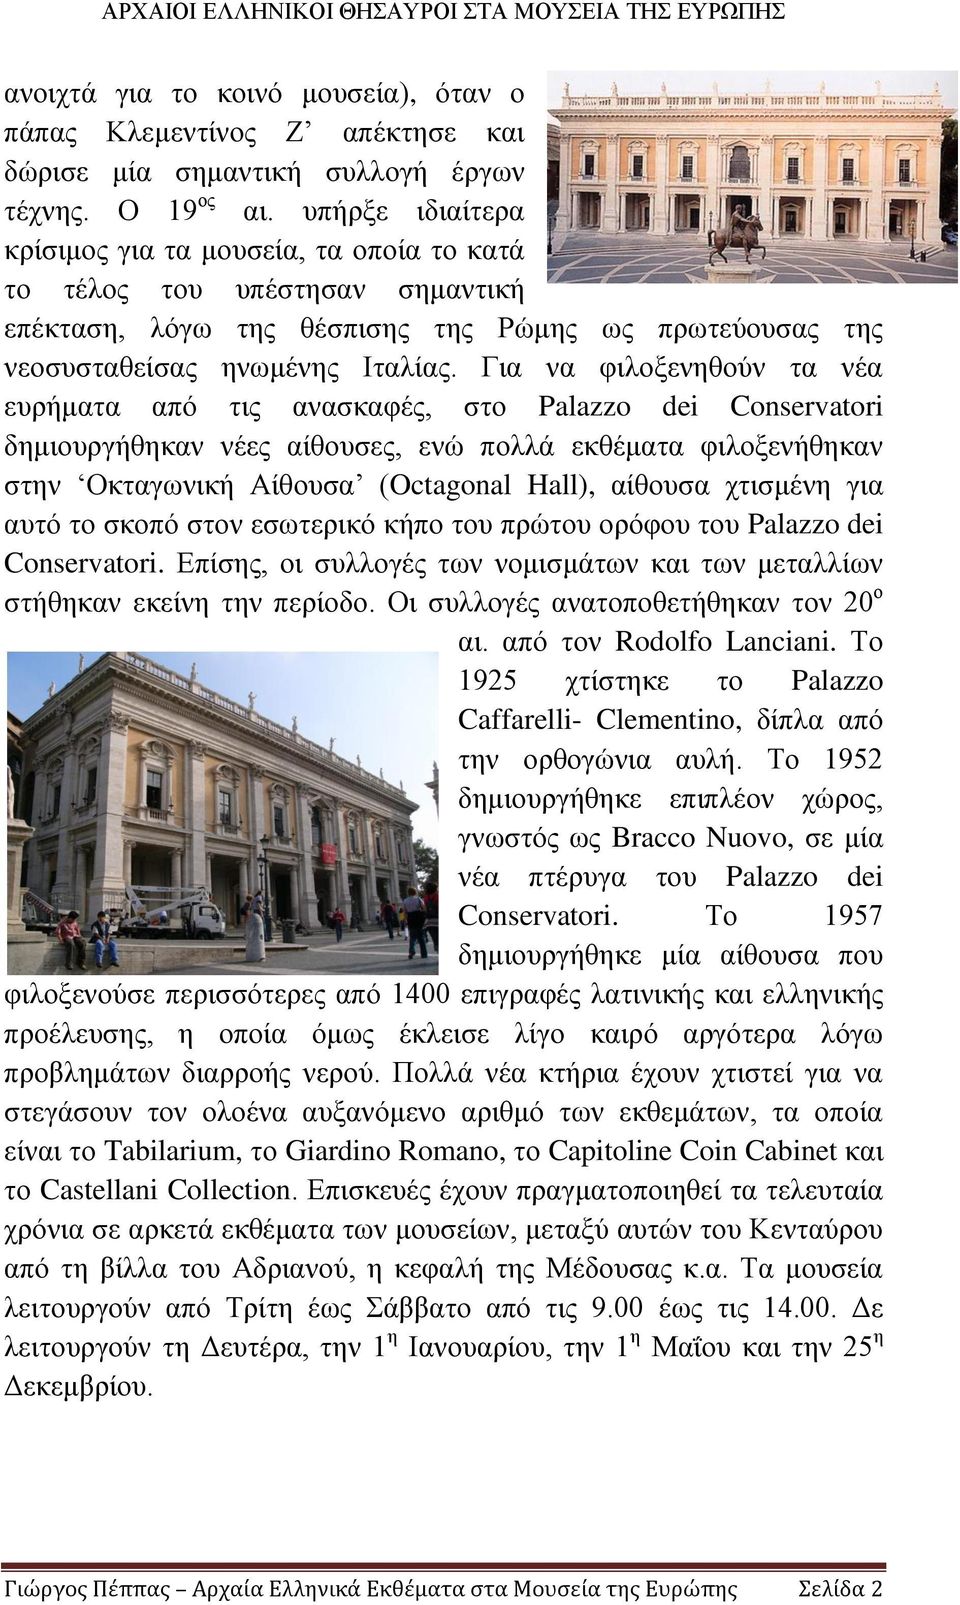 Για να φιλοξενηθούν τα νέα ευρήματα από τις ανασκαφές, στο Palazzo dei Conservatori δημιουργήθηκαν νέες αίθουσες, ενώ πολλά εκθέματα φιλοξενήθηκαν στην Οκταγωνική Αίθουσα (Octagonal Hall), αίθουσα